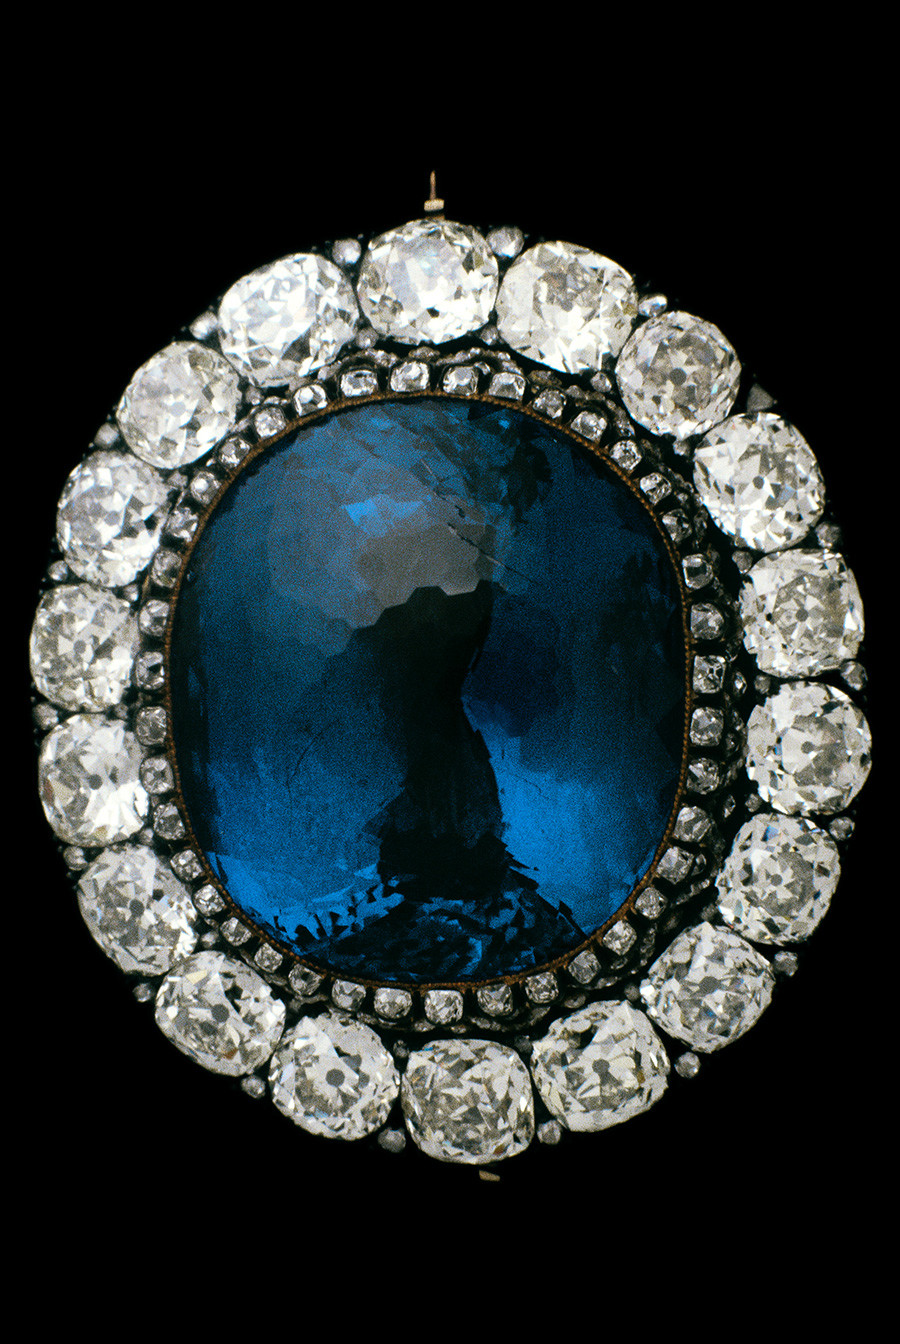 Васильково-синий сапфир из Шри-Ланки – один из семи всемирно известных исторических камней, хранится в Алмазном фонде России. 